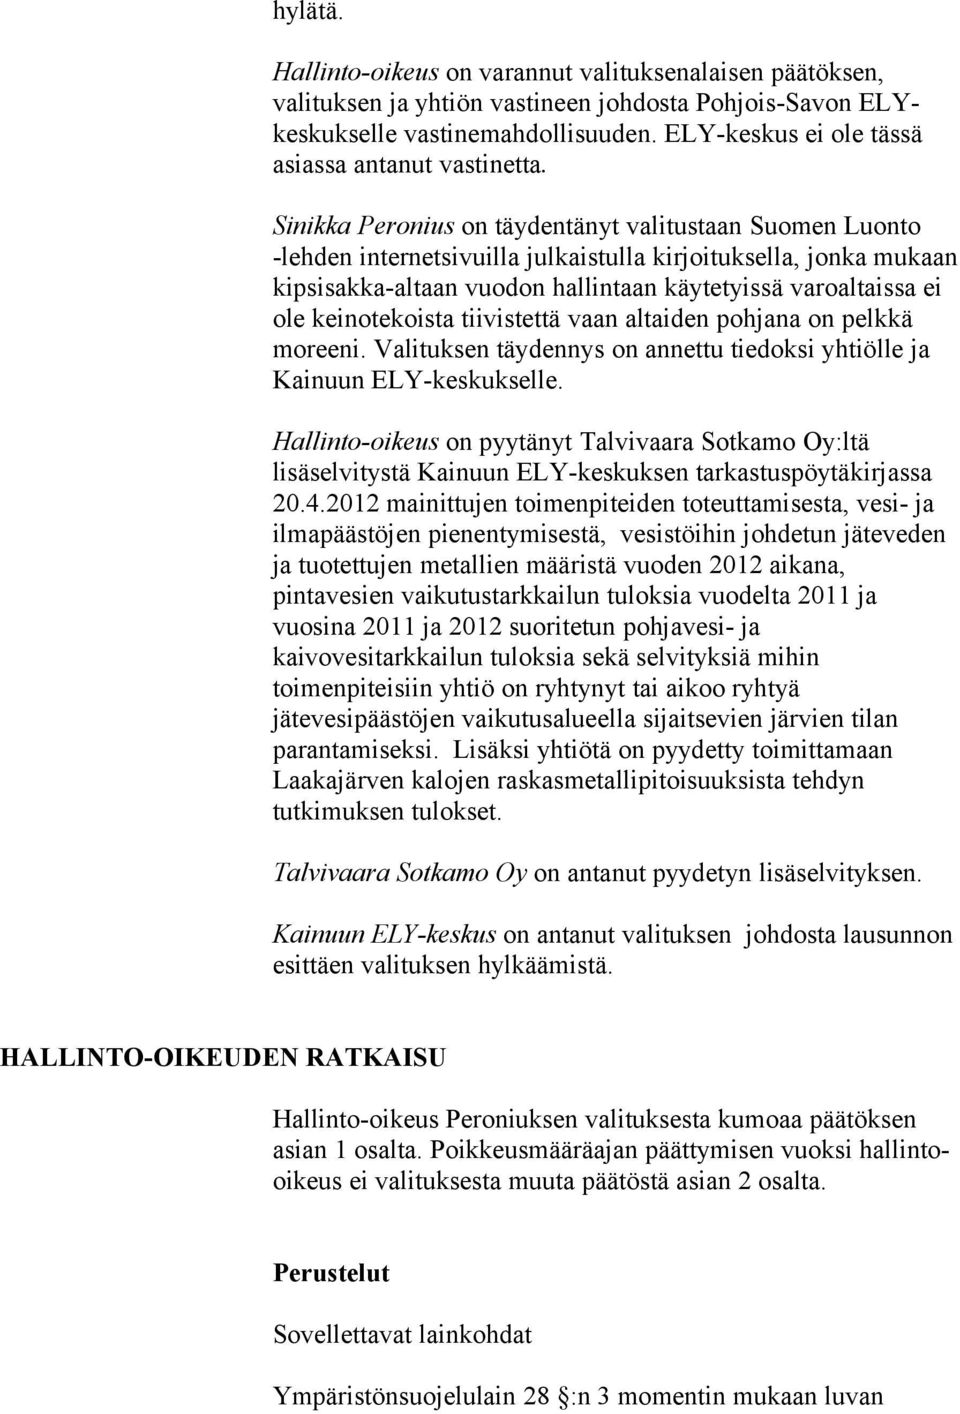 Sinikka Peronius on täydentänyt valitustaan Suomen Luonto -lehden internetsivuilla julkaistulla kirjoituksella, jonka mukaan kipsisakka-altaan vuodon hallintaan käytetyissä varoaltaissa ei ole